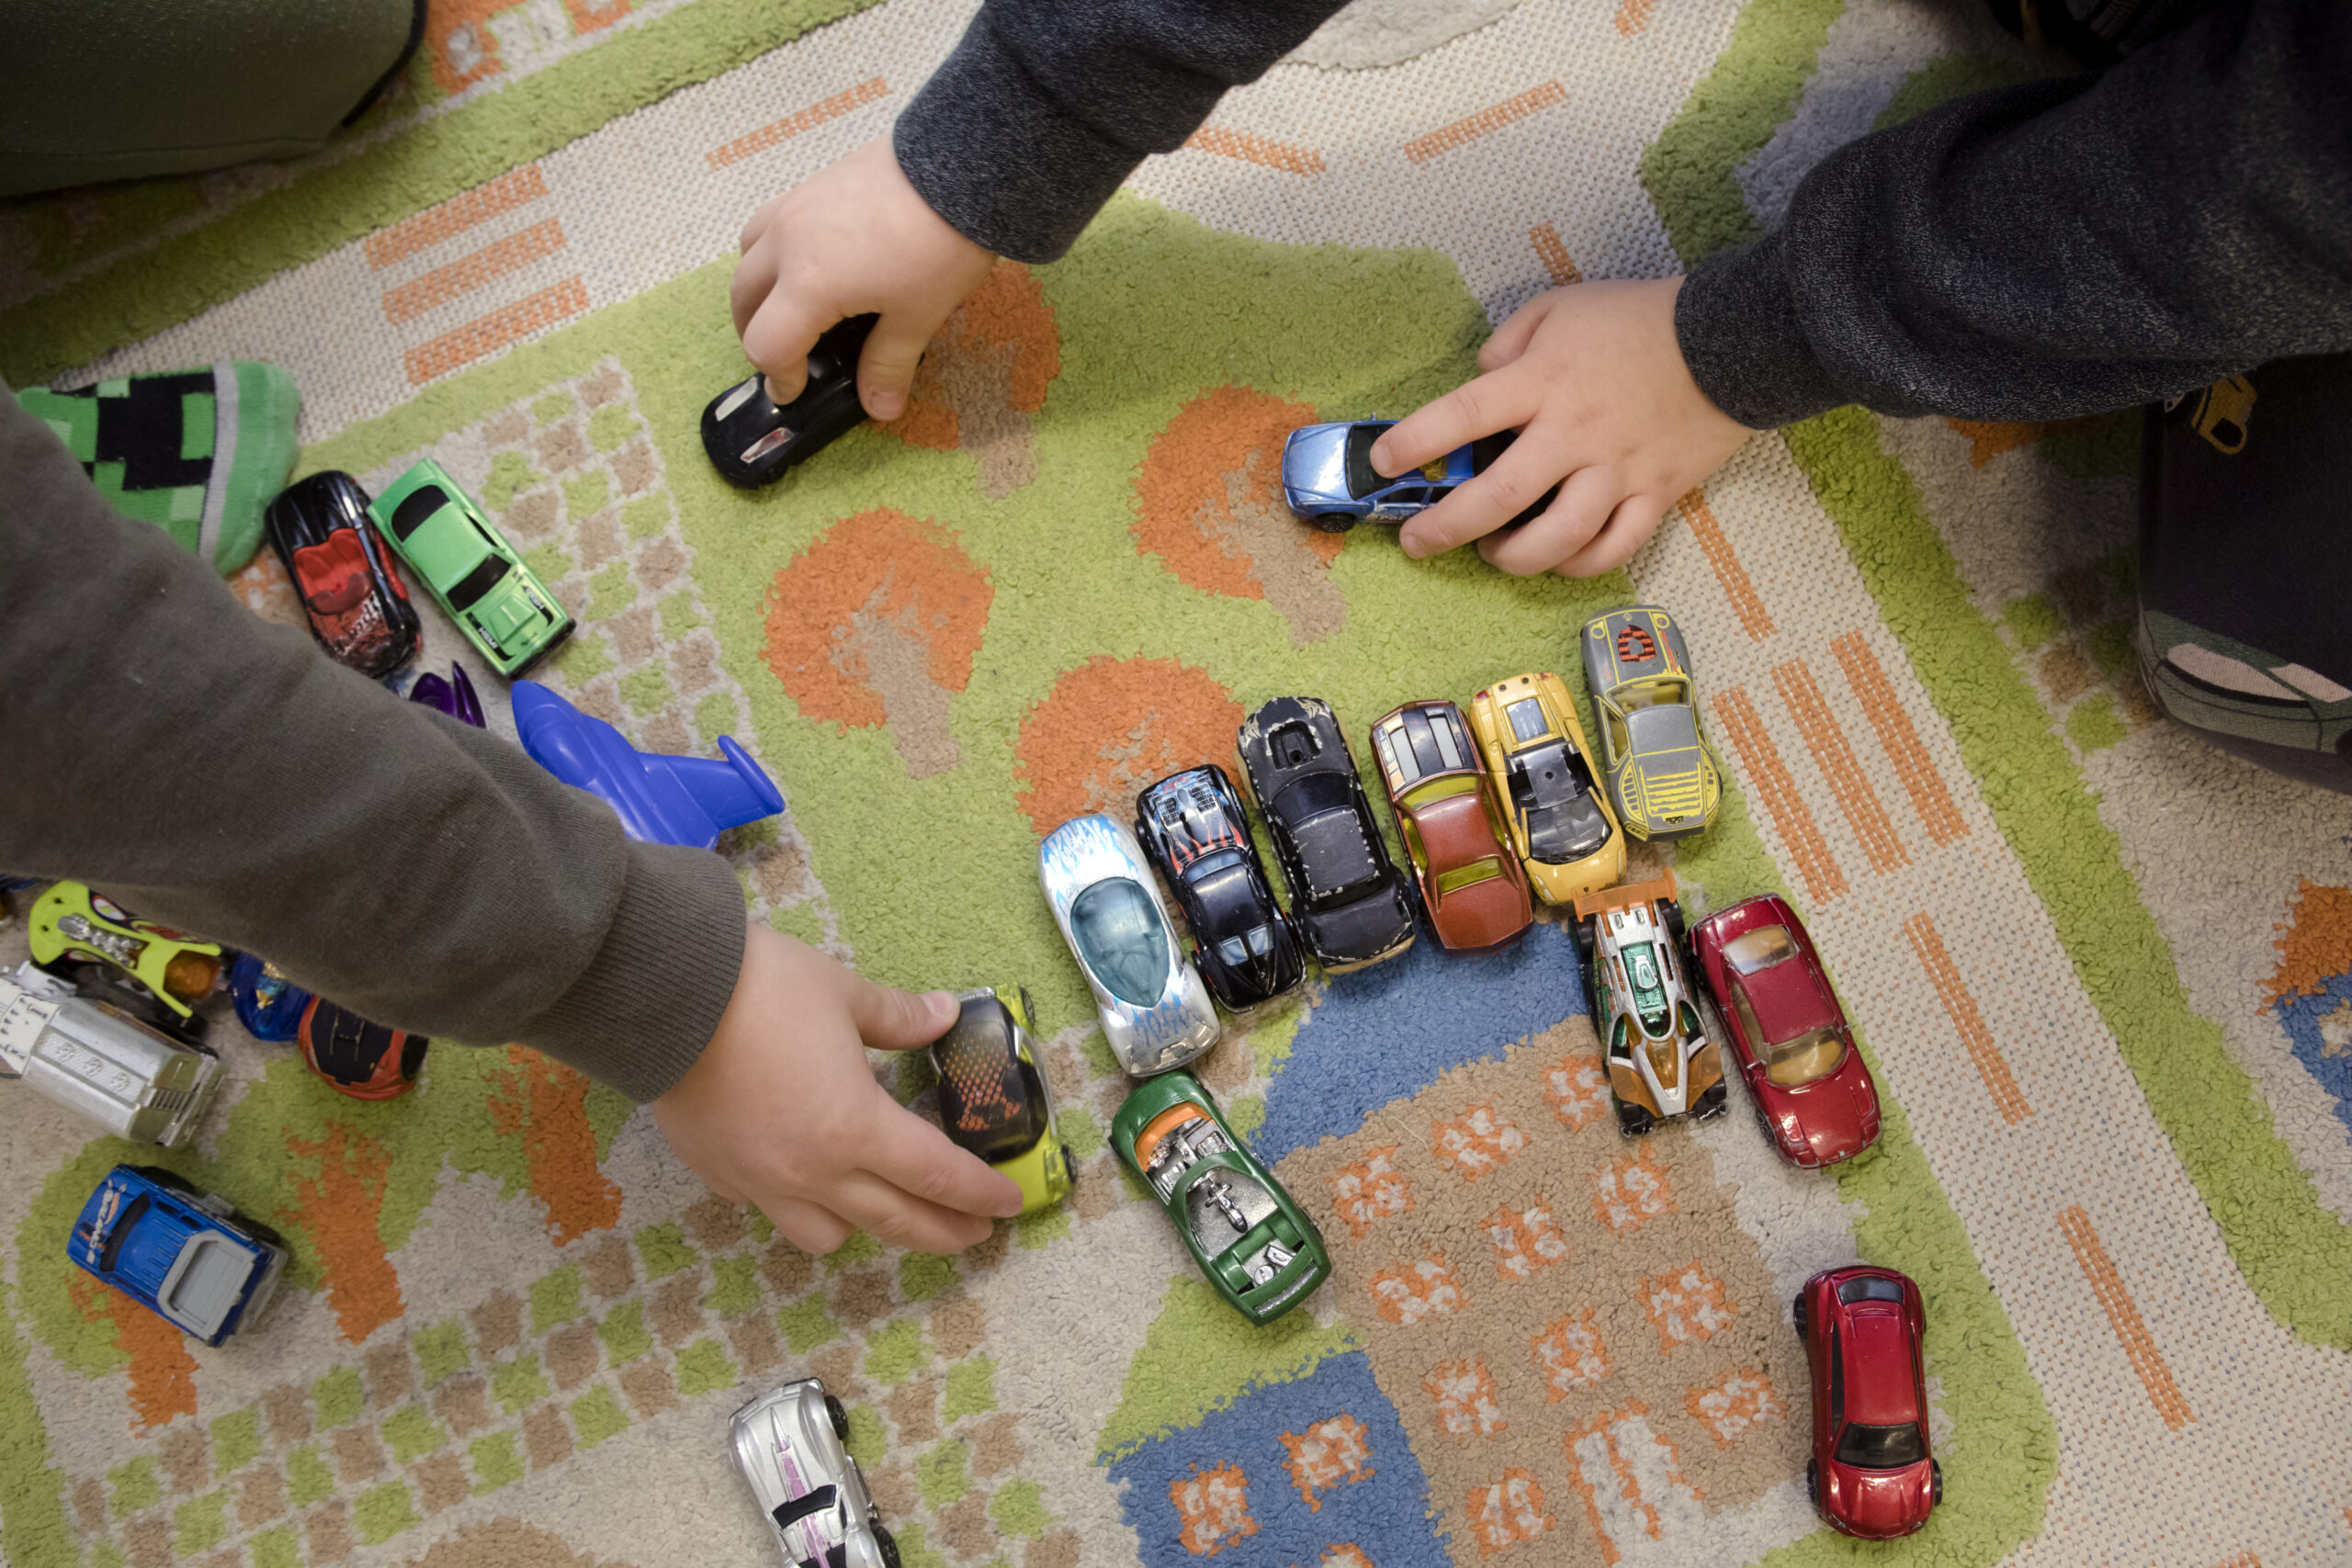 Pieniä leikkiautoja matolla, jossa ajotie- ja parkkipaikkakuvioita. Leikkivien lasten käsiä näkyvillä.